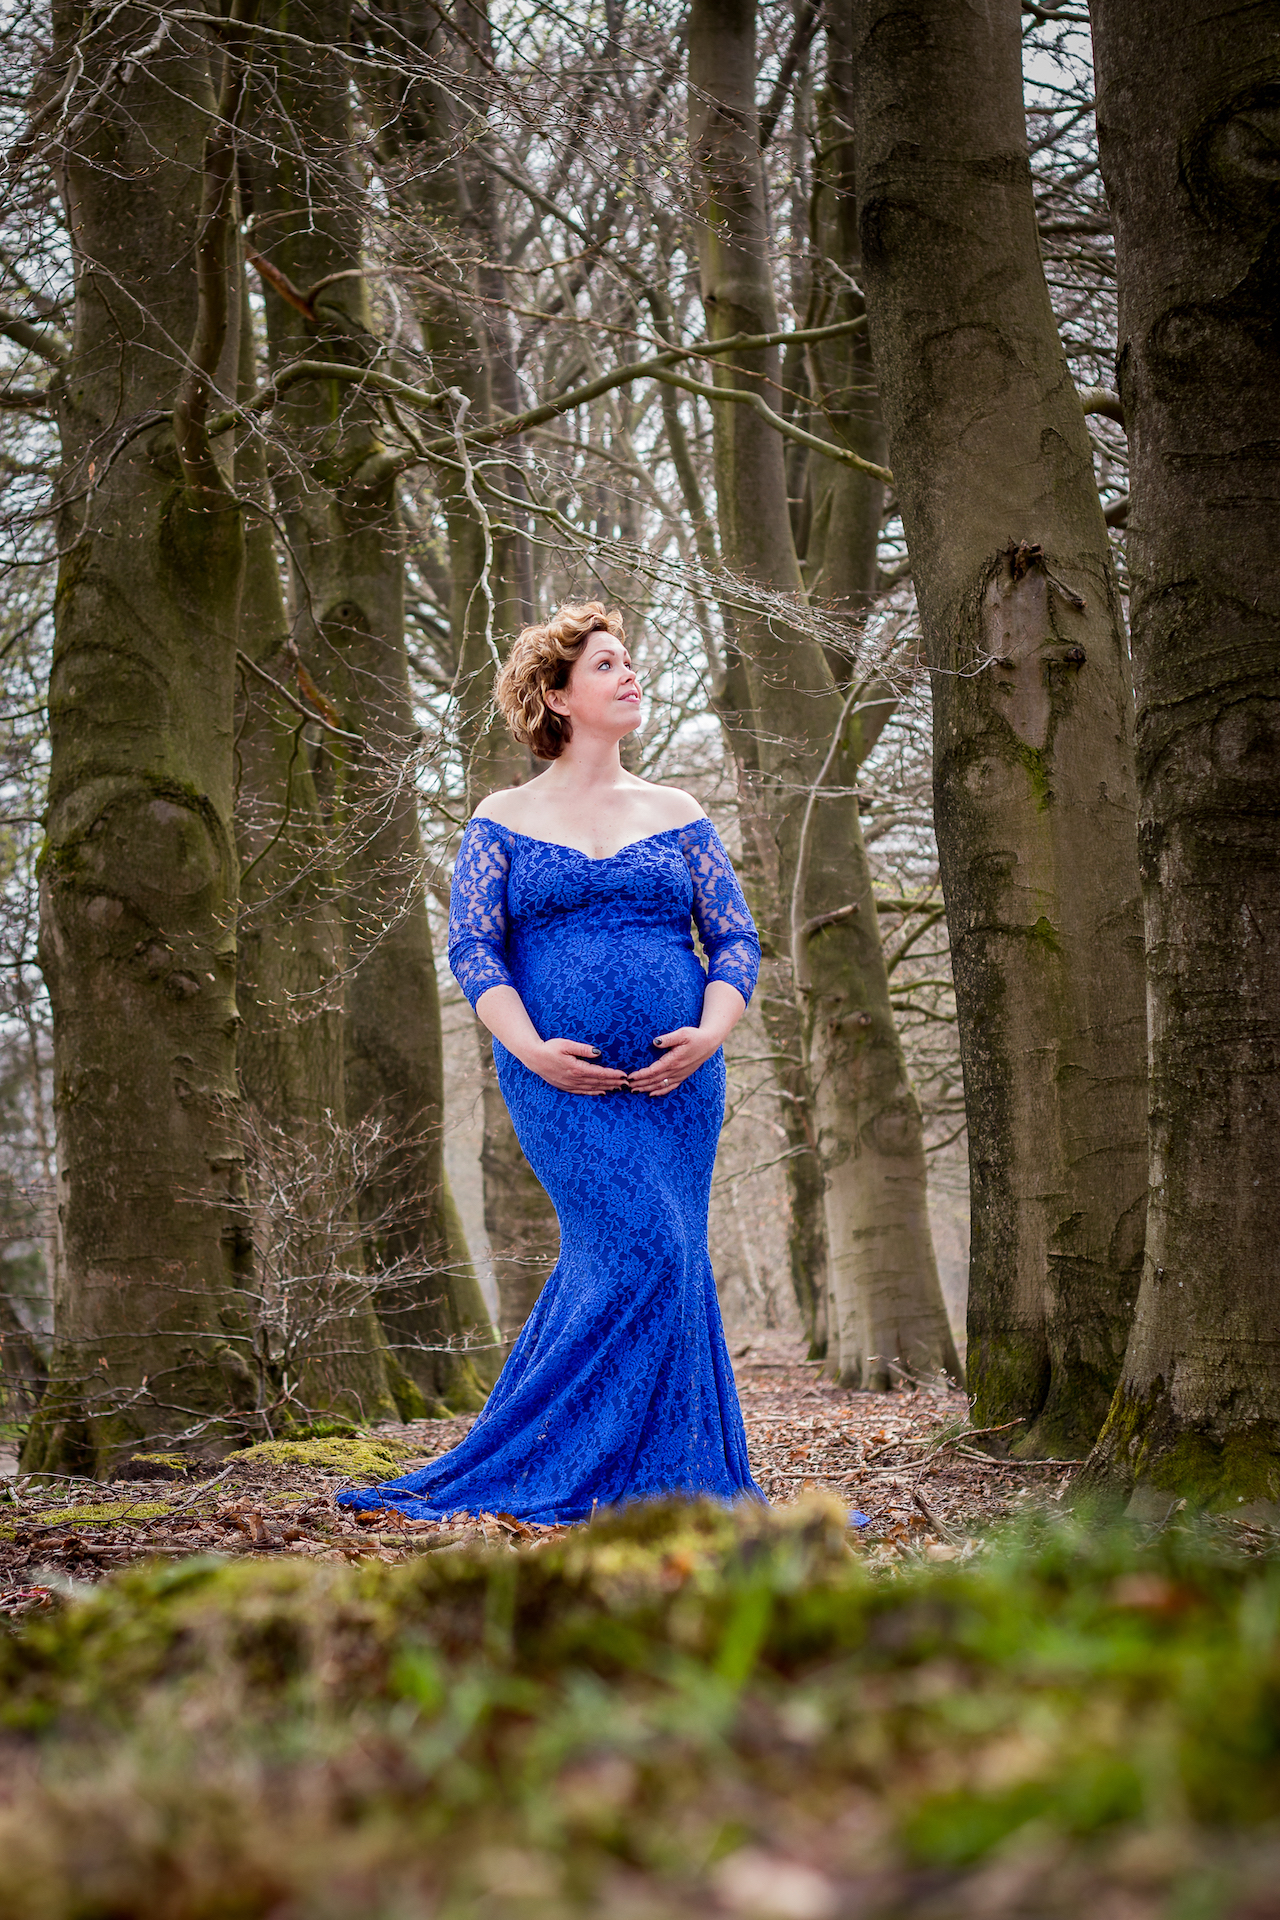 Zwangerschapsfotografie in het bos